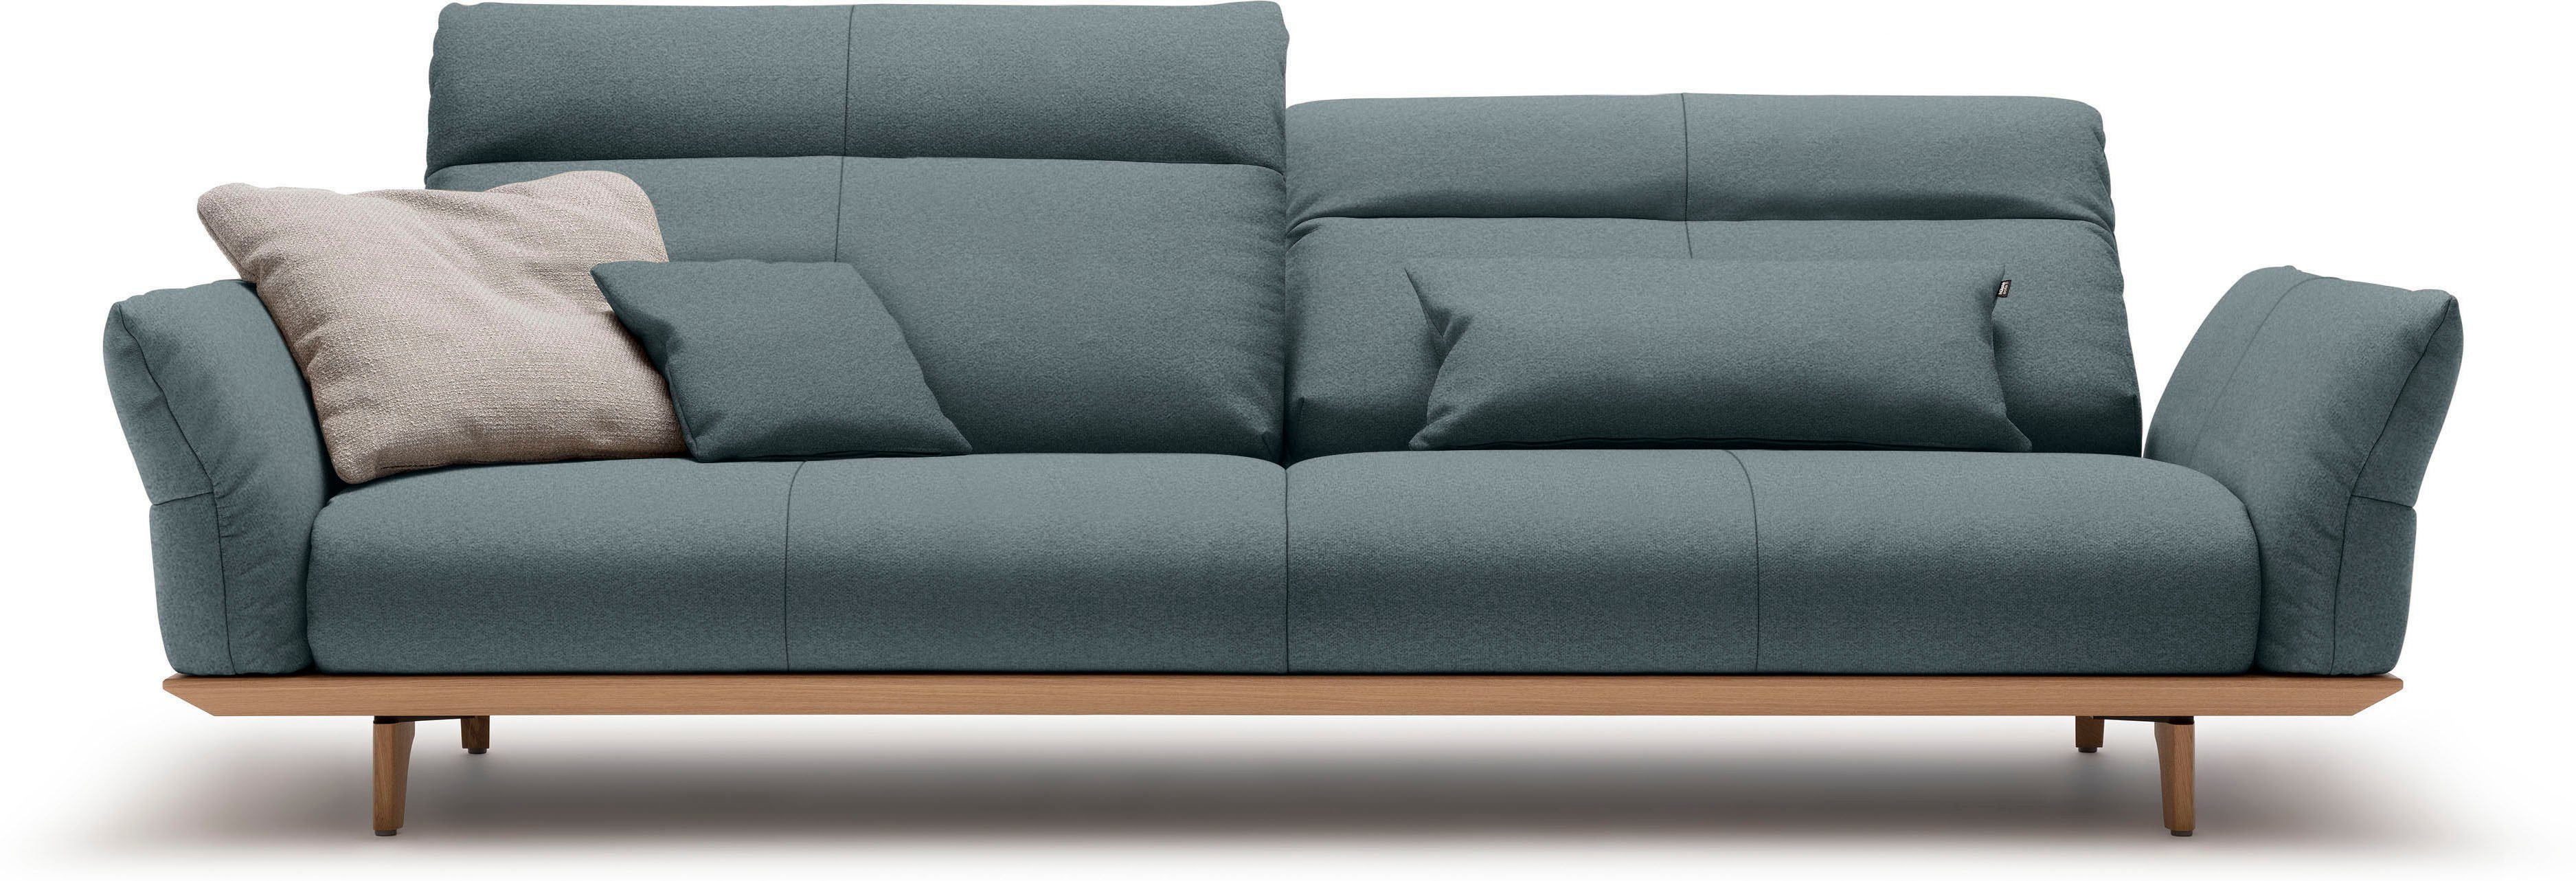 huelsta sofa 4-zitsbank hs.460 onderstel in eiken, poten in natuurlijk eiken, breedte 248 cm blauw